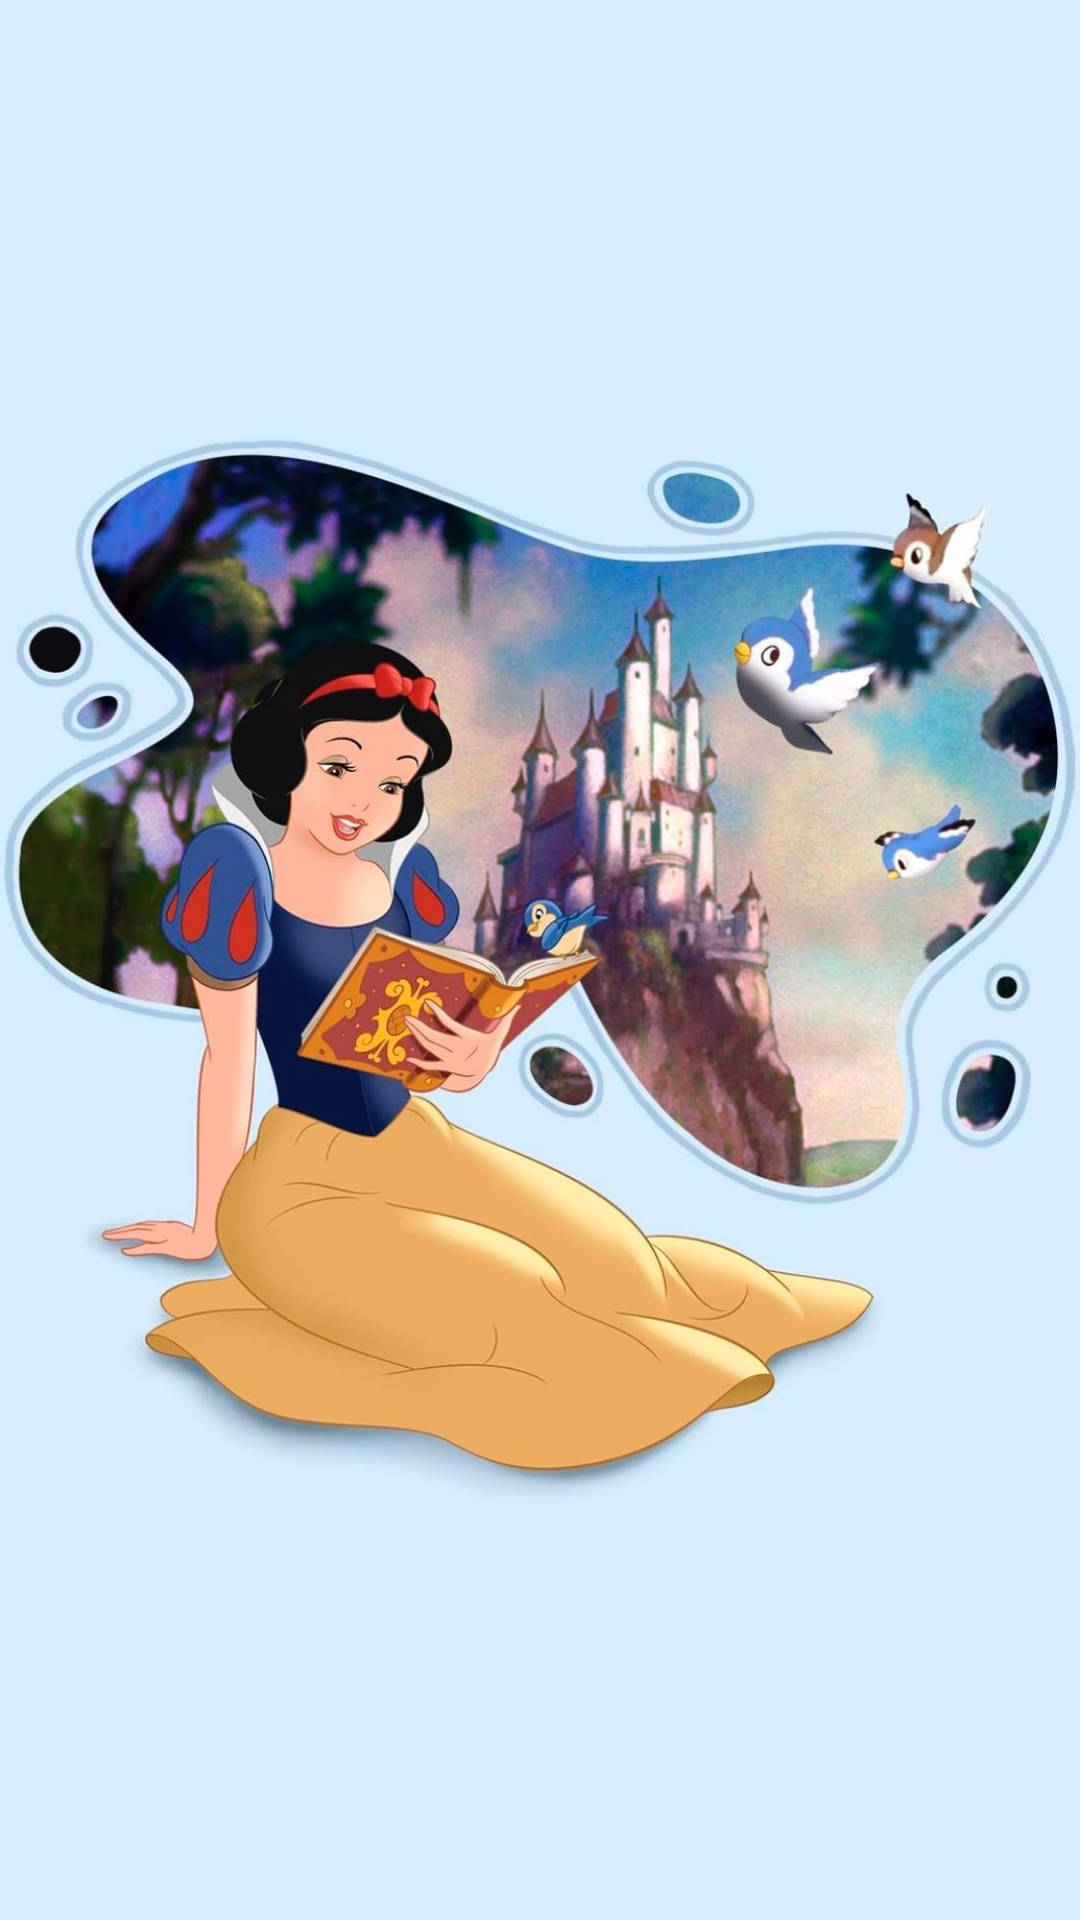 Lindocastillo De Blancanieves De Las Princesas De Disney Con Una Estética Encantadora. Fondo de pantalla